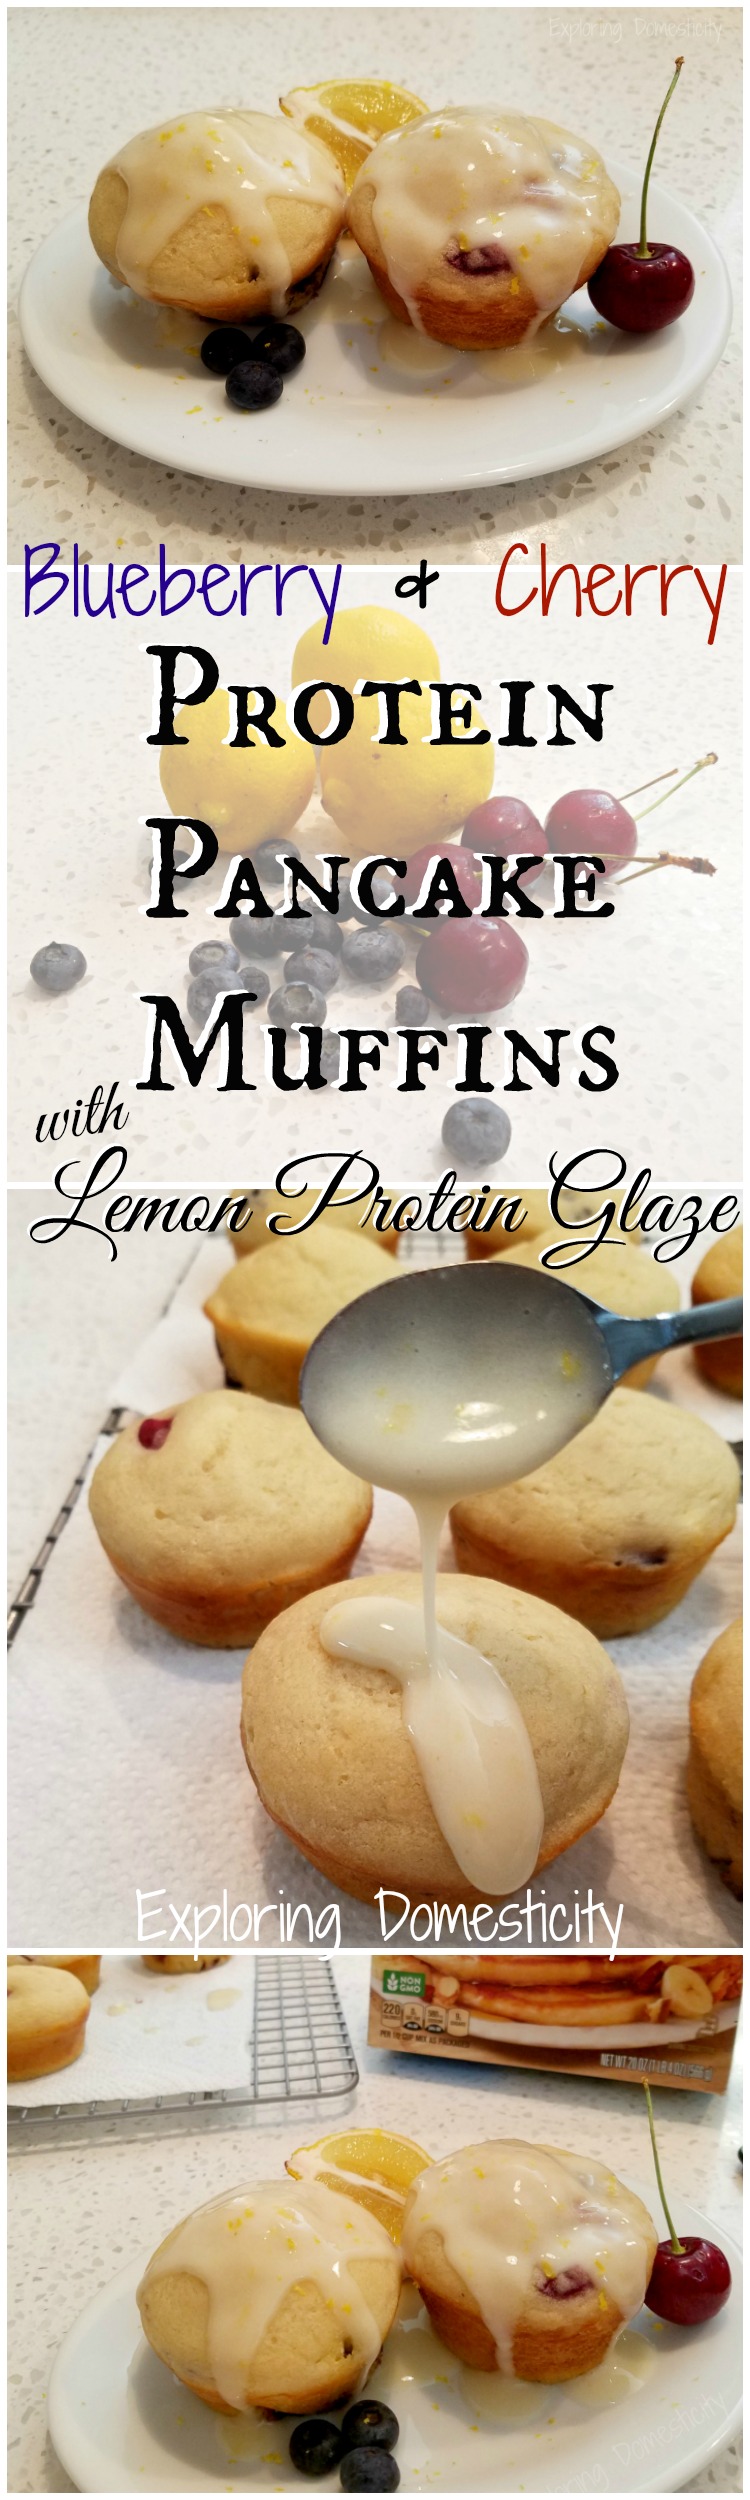 Chocolate Protein Pancakes - Jar Of Lemons